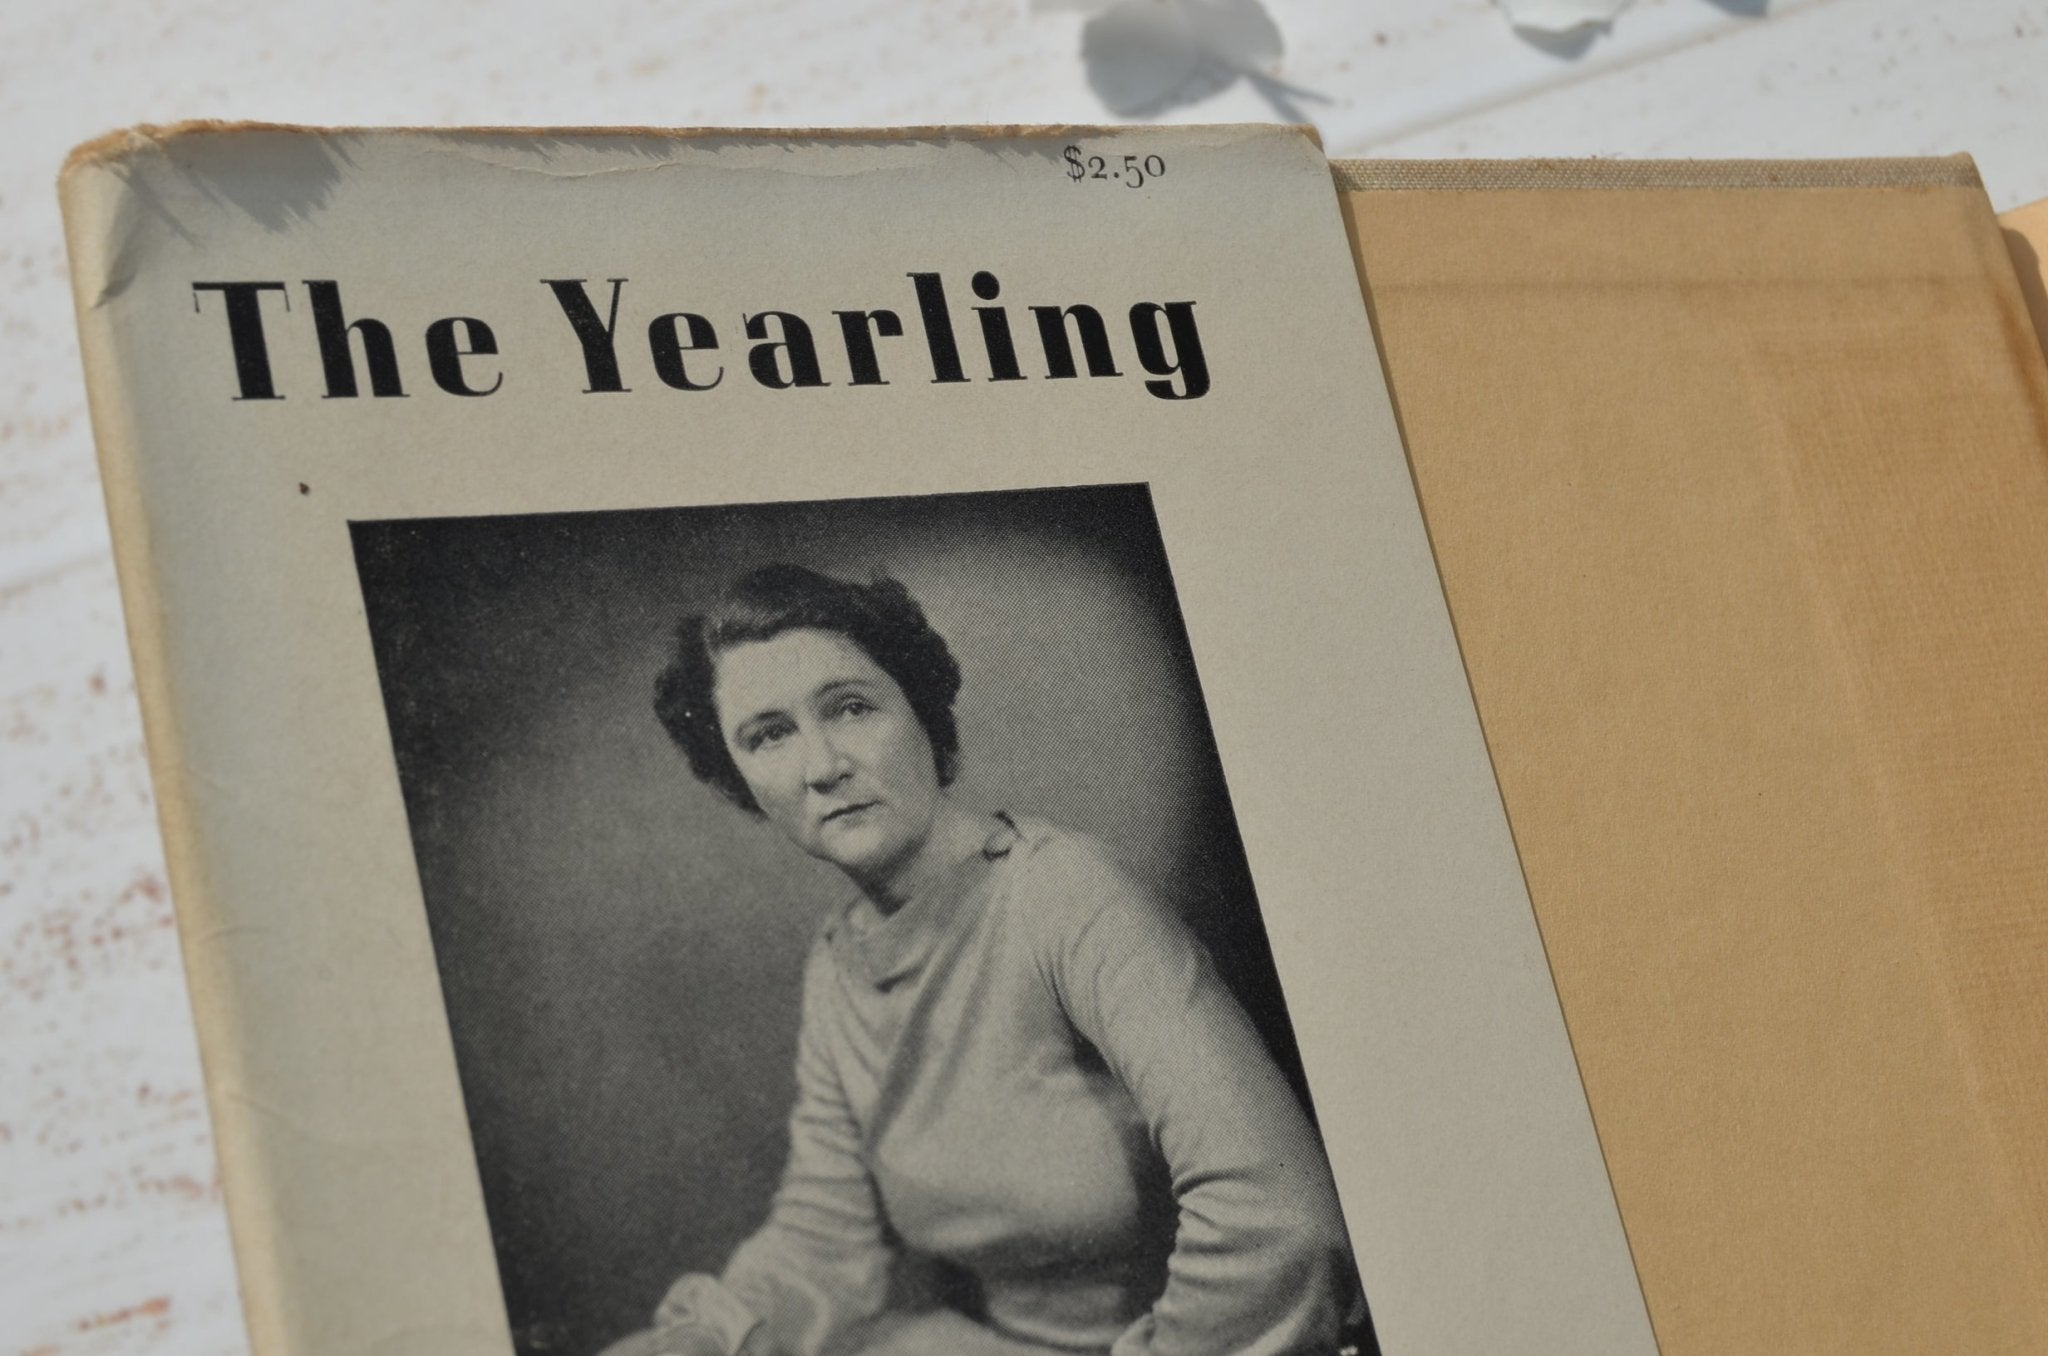 Early Printing – The Yearling by Marjorie Kinnan Rawlings 1938 - Brookfield Books